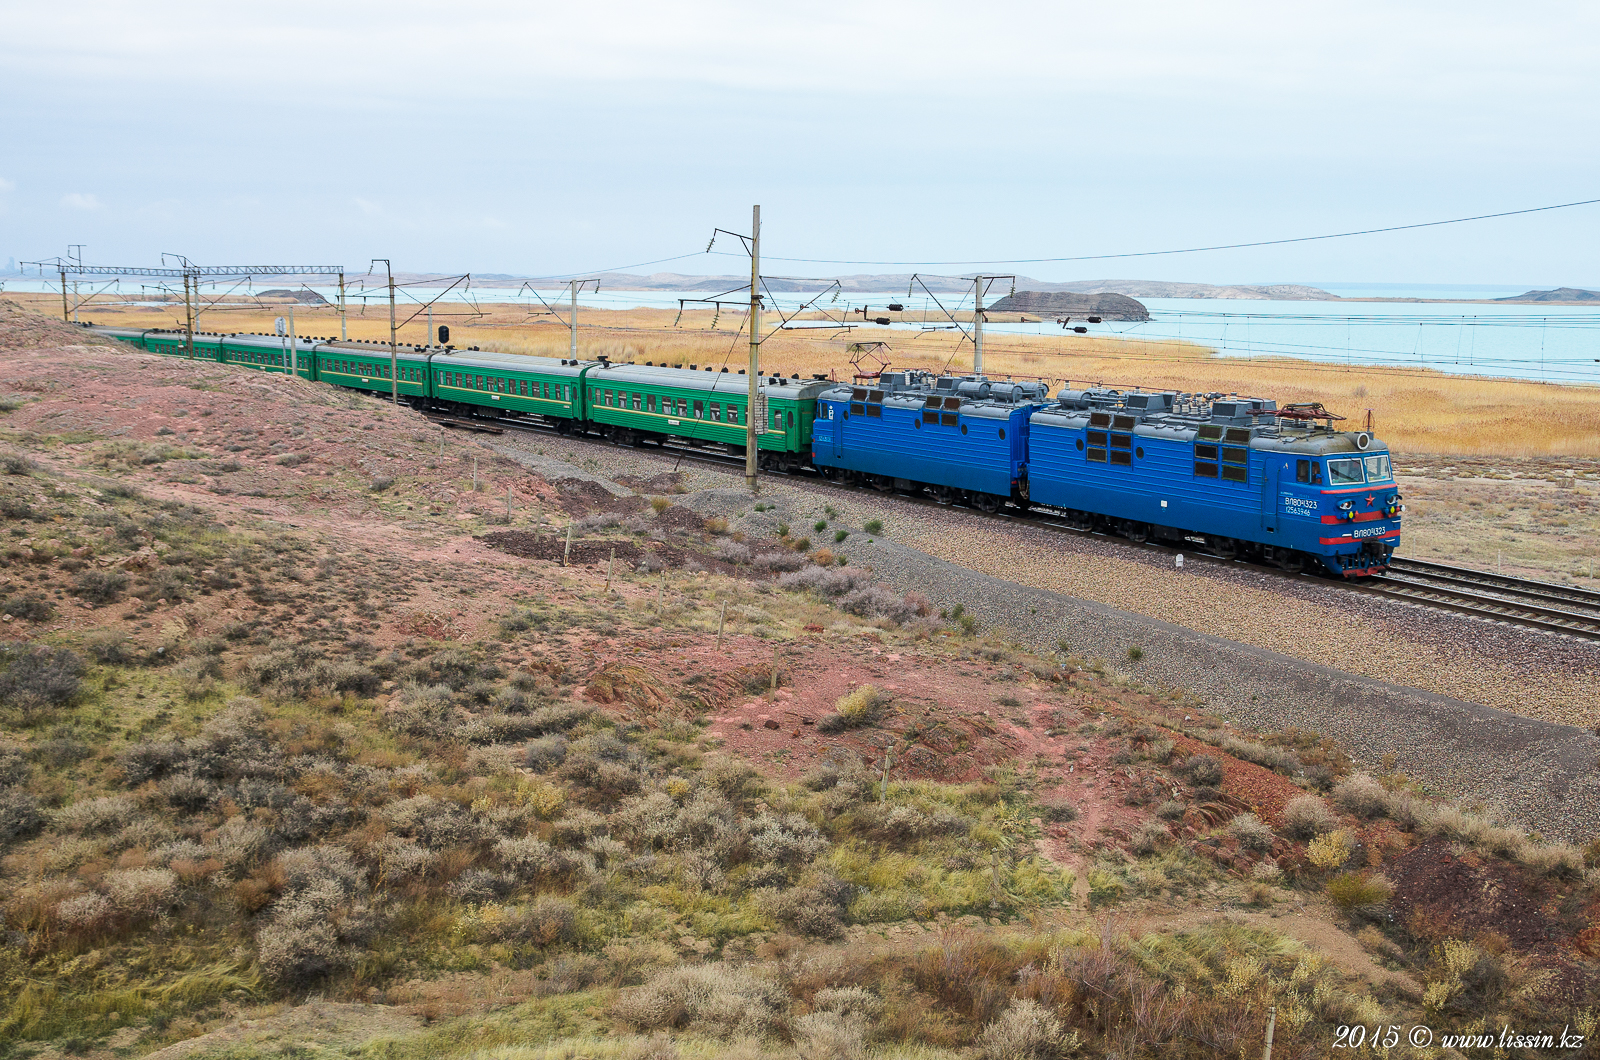 ВЛ80С-1323 с поездом №306 Екатеринбург - Бишкек на перегоне Мын-Арал - Кайратколь, Жамбыльская область, 31.10.15г.